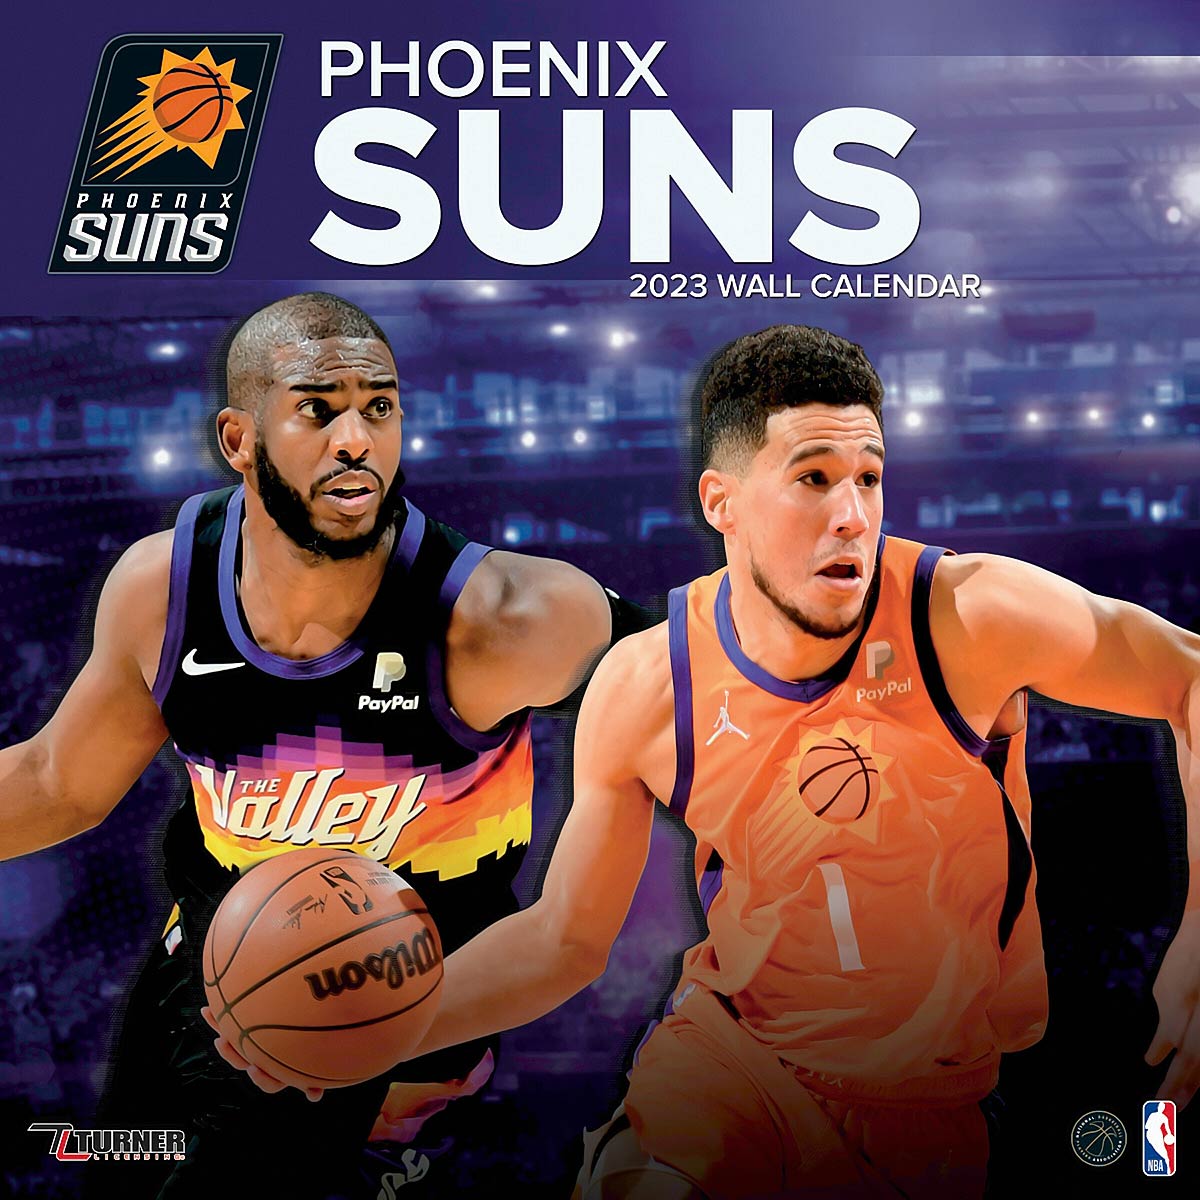 Kaufen Sie NBA Phoenix Suns Team Wall Calendar 2023 für CHF 4.95 auf